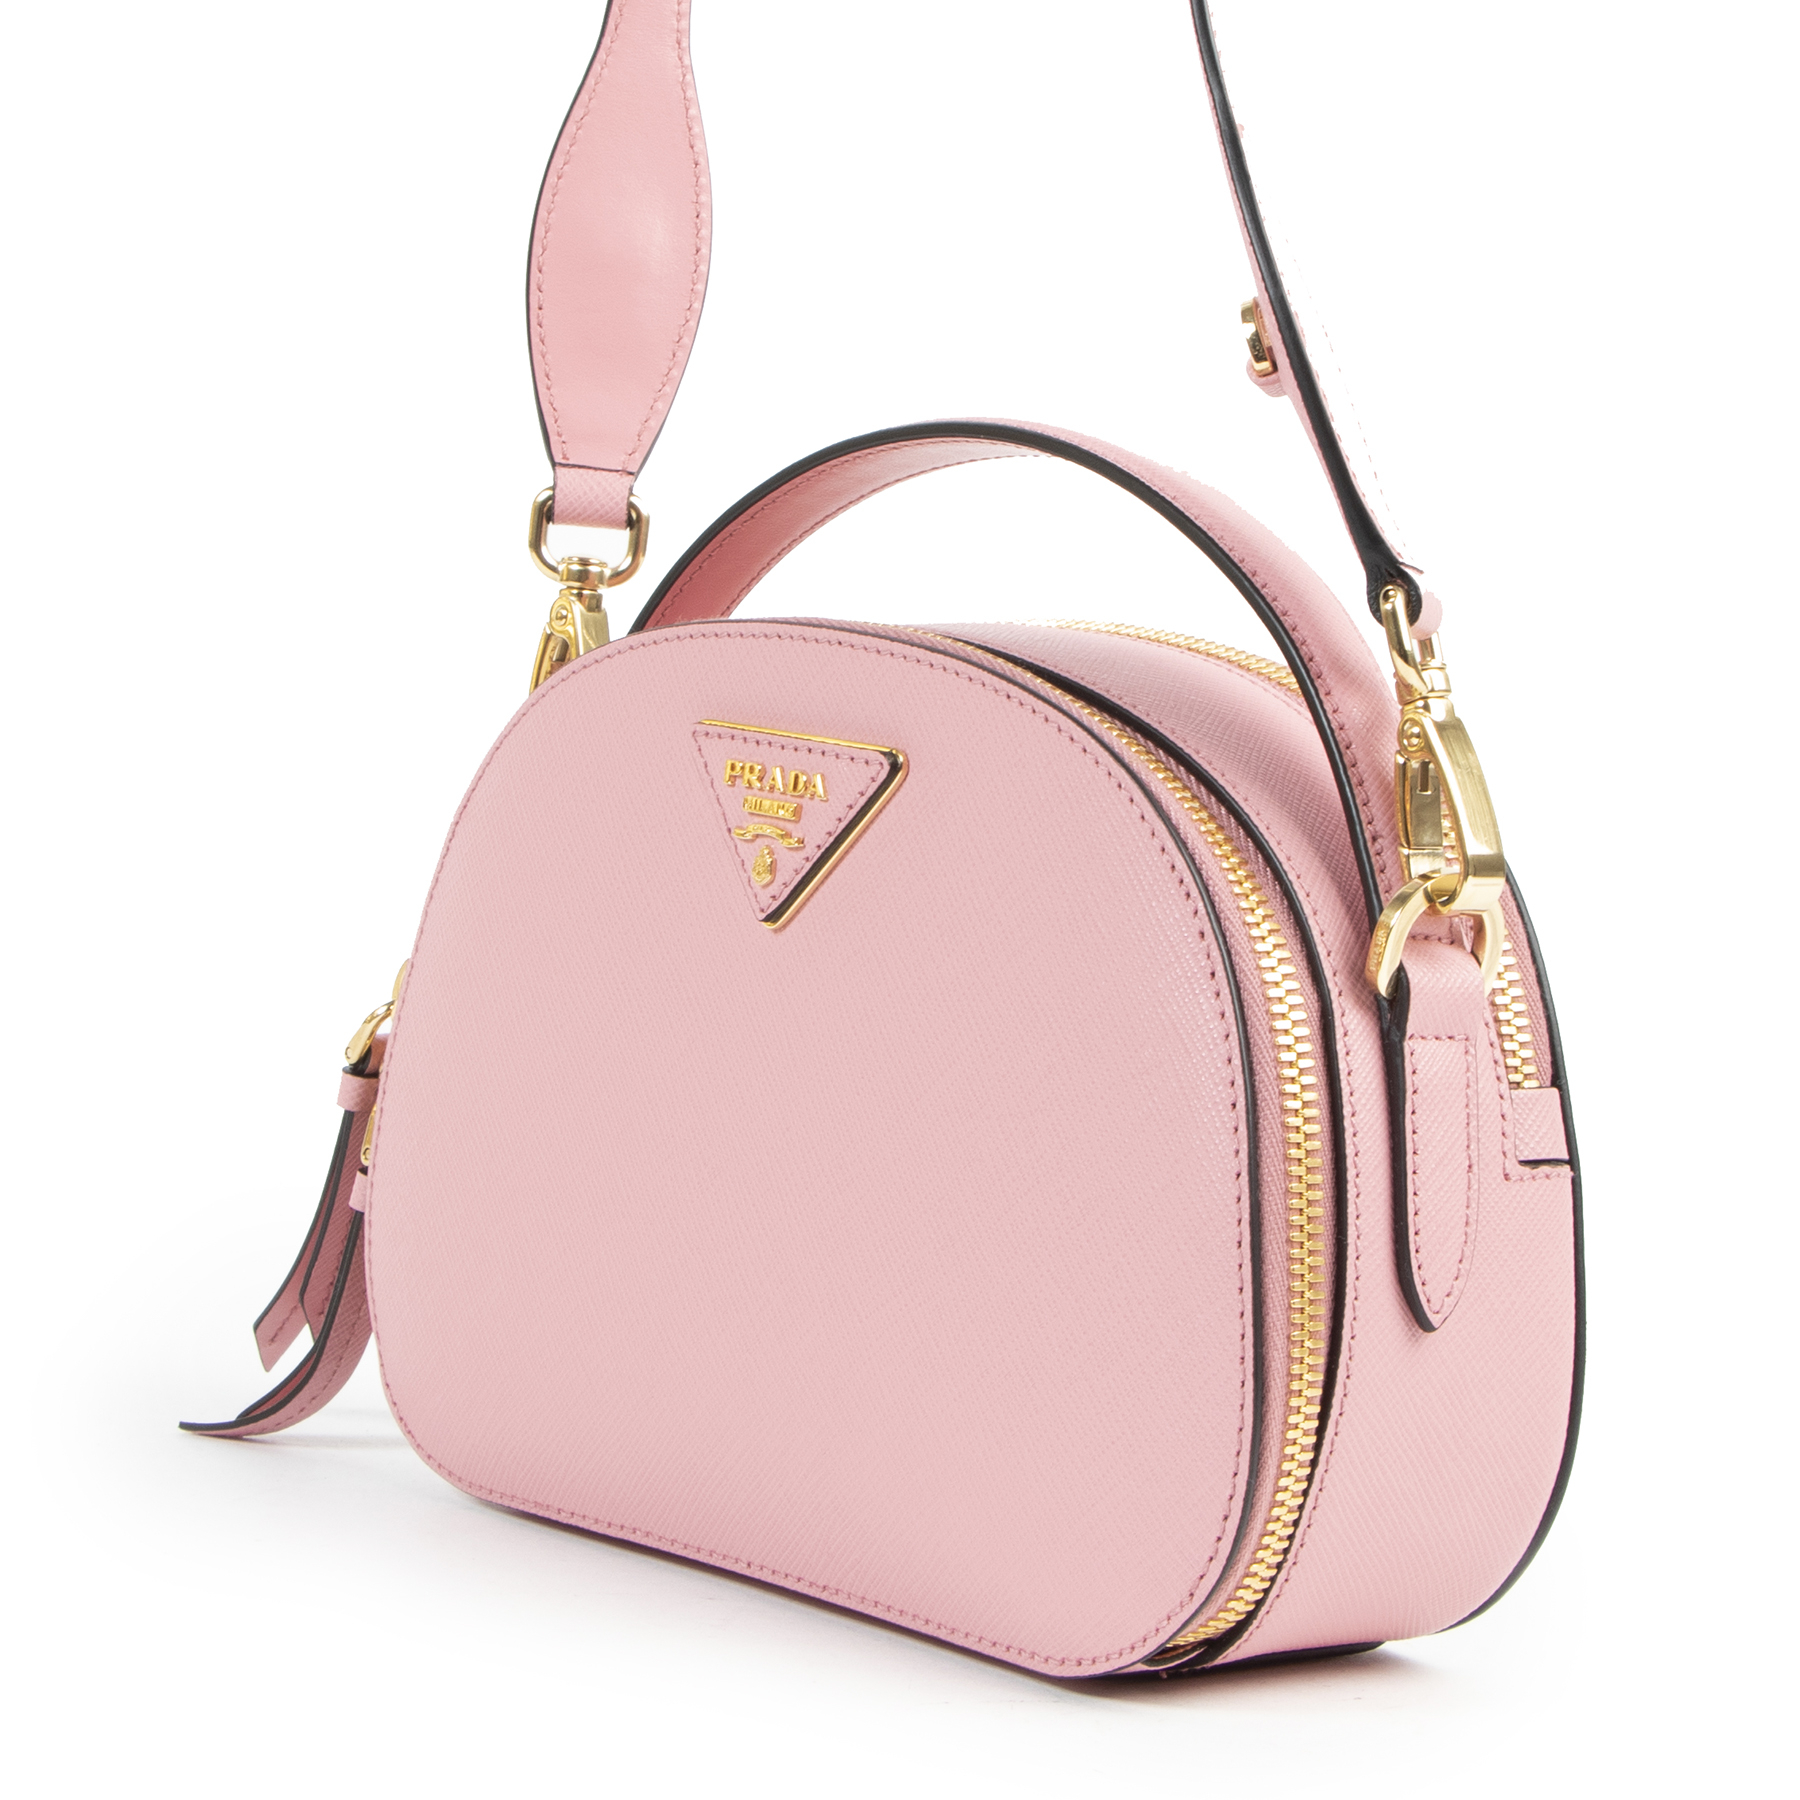 Prada Odette shoulder bag - ShopStyle